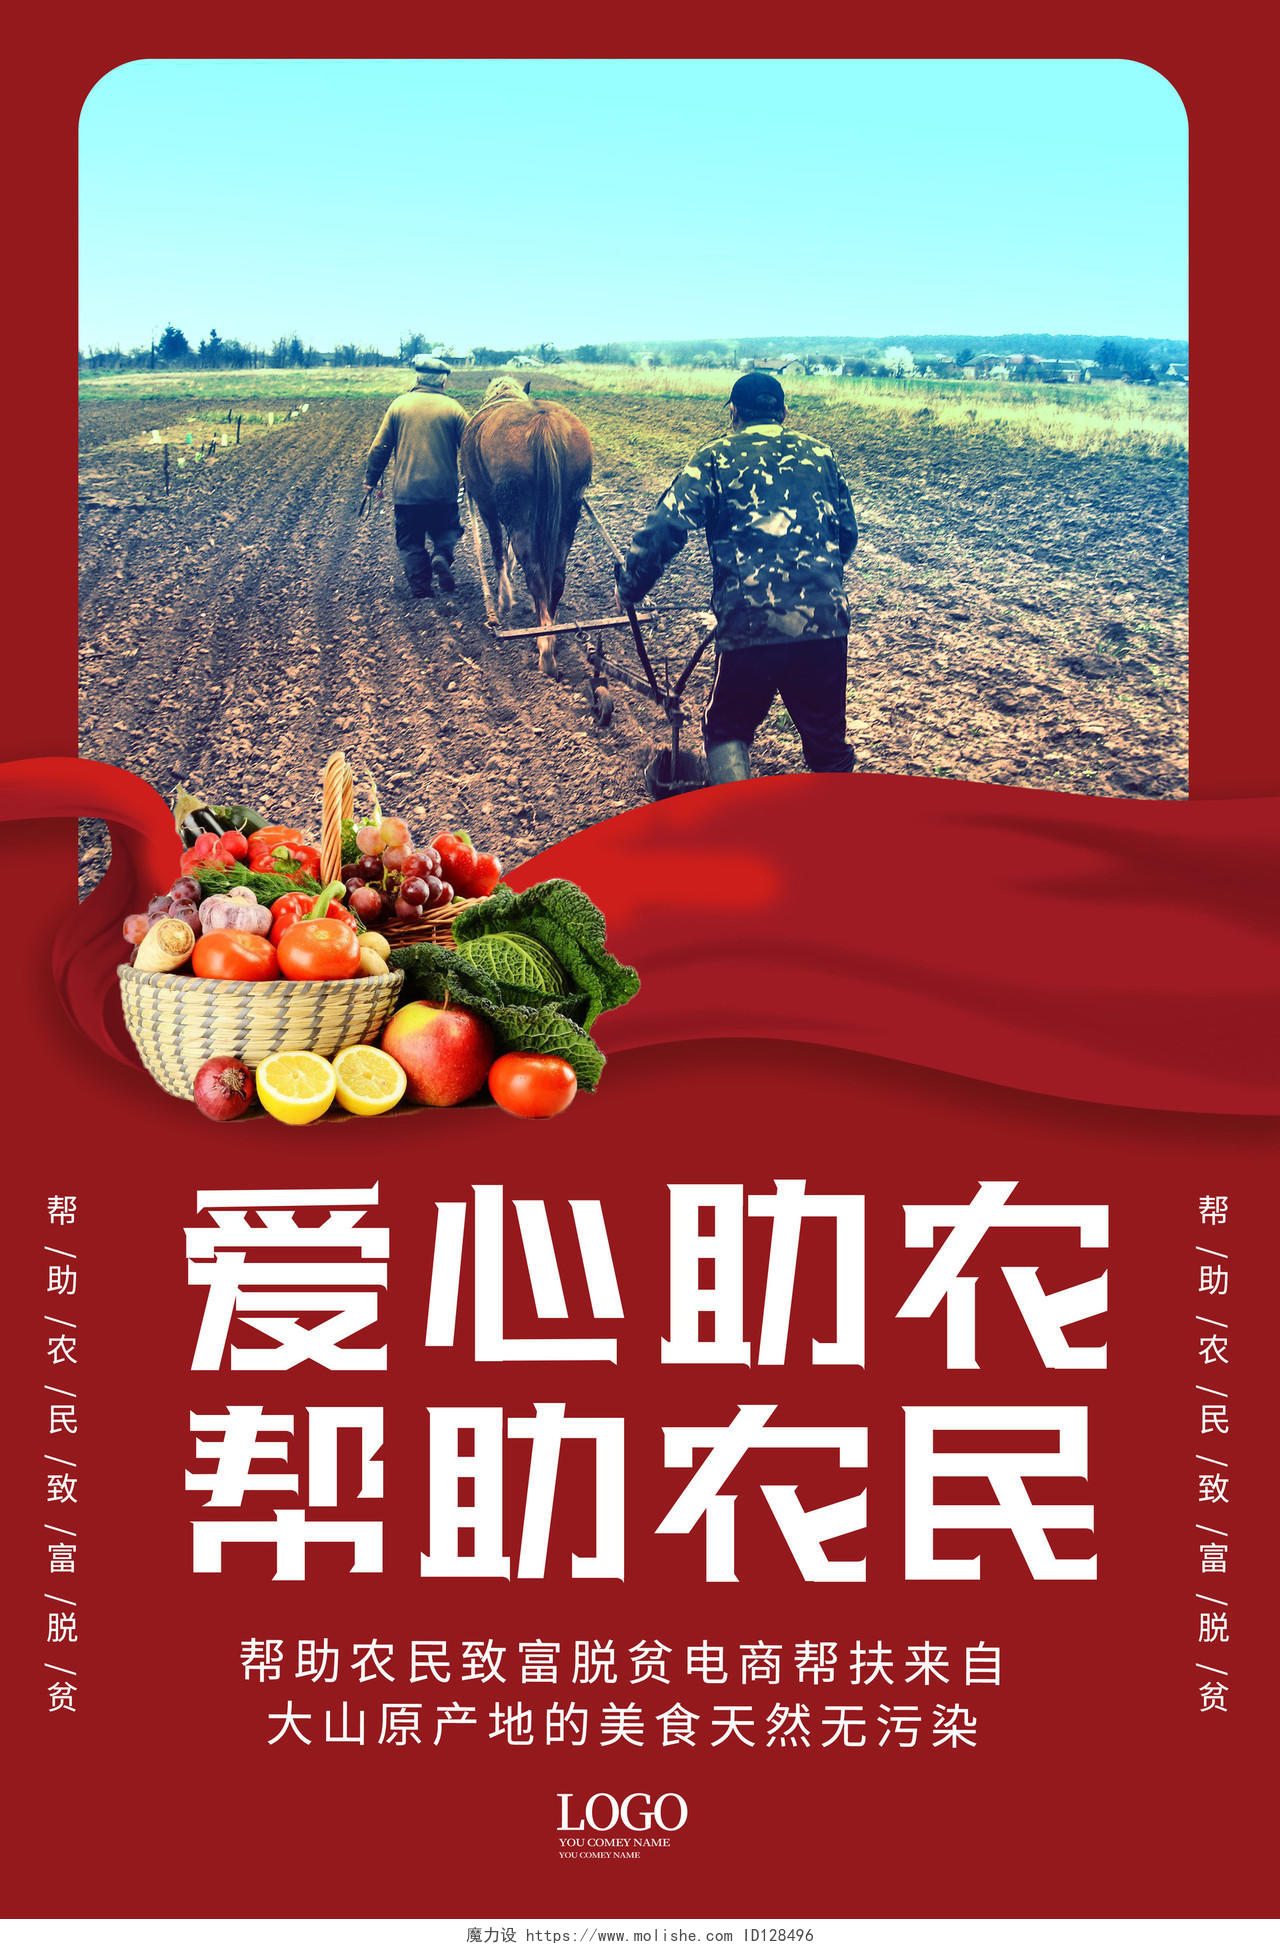 红色大气创意爱心助农生鲜蔬菜爱心助农慈善公益海报